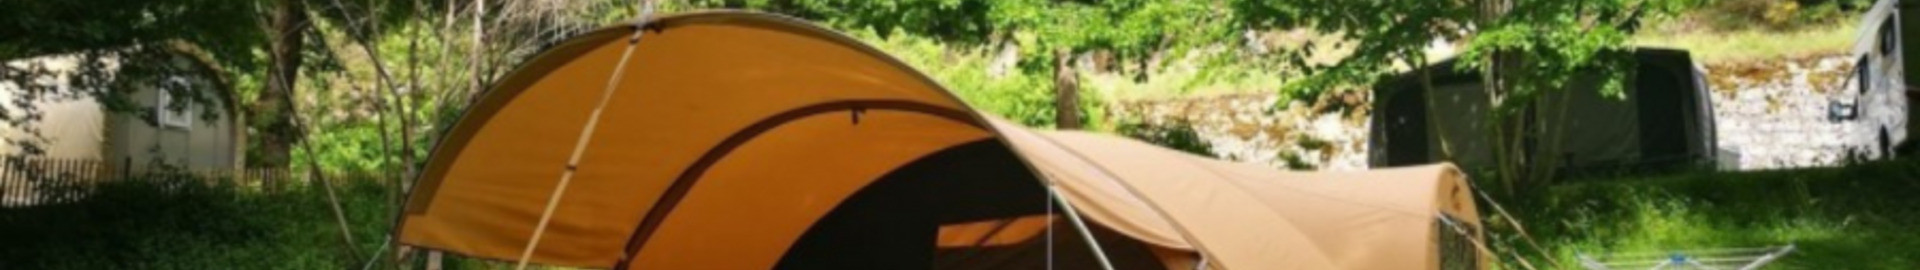 Tentes camping classiques